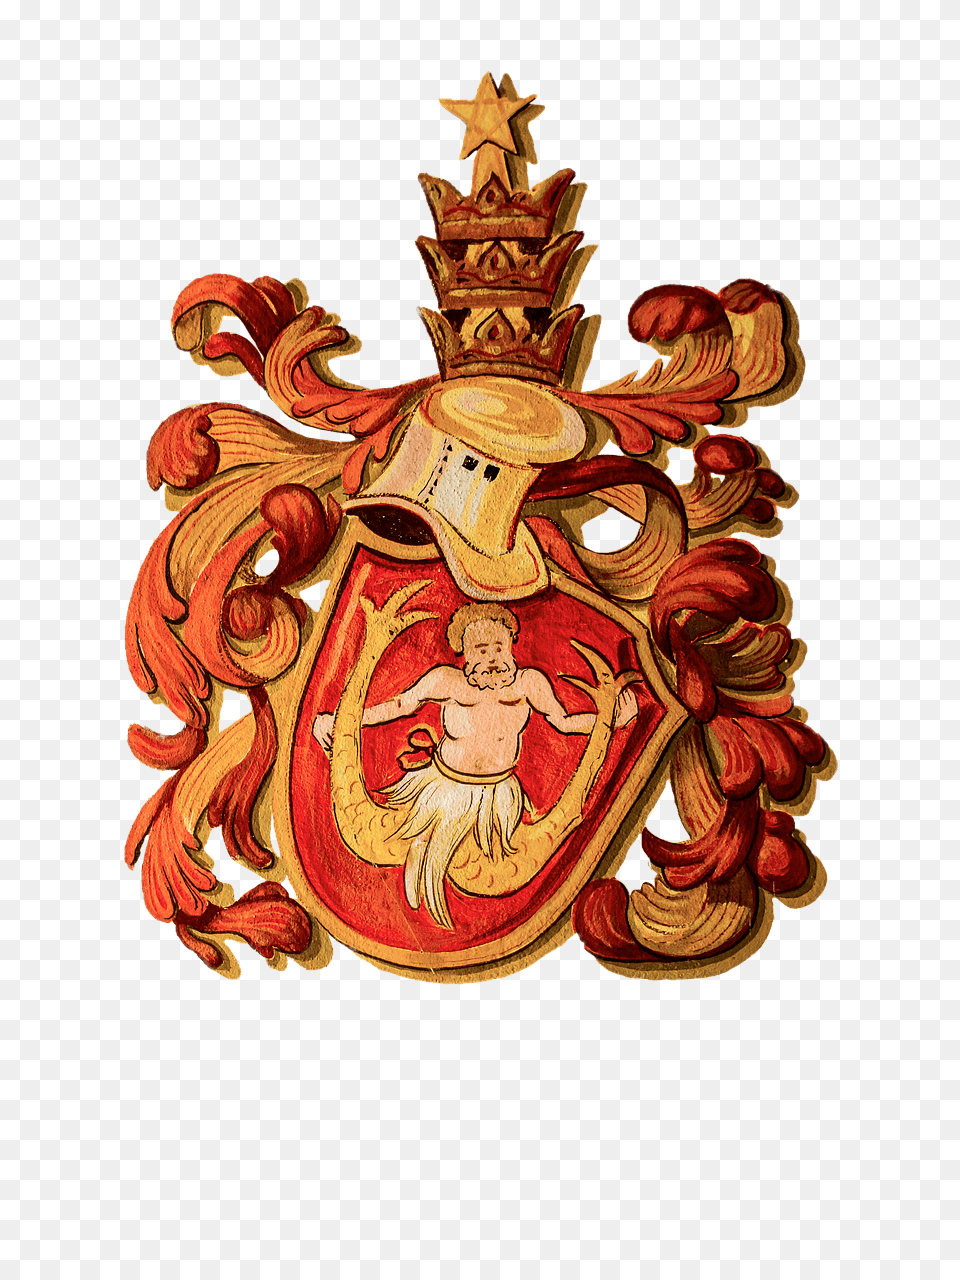 Coat Of Arms Zodiac Sign Aquarius, Emblem, Symbol, Adult, Wedding Png Image